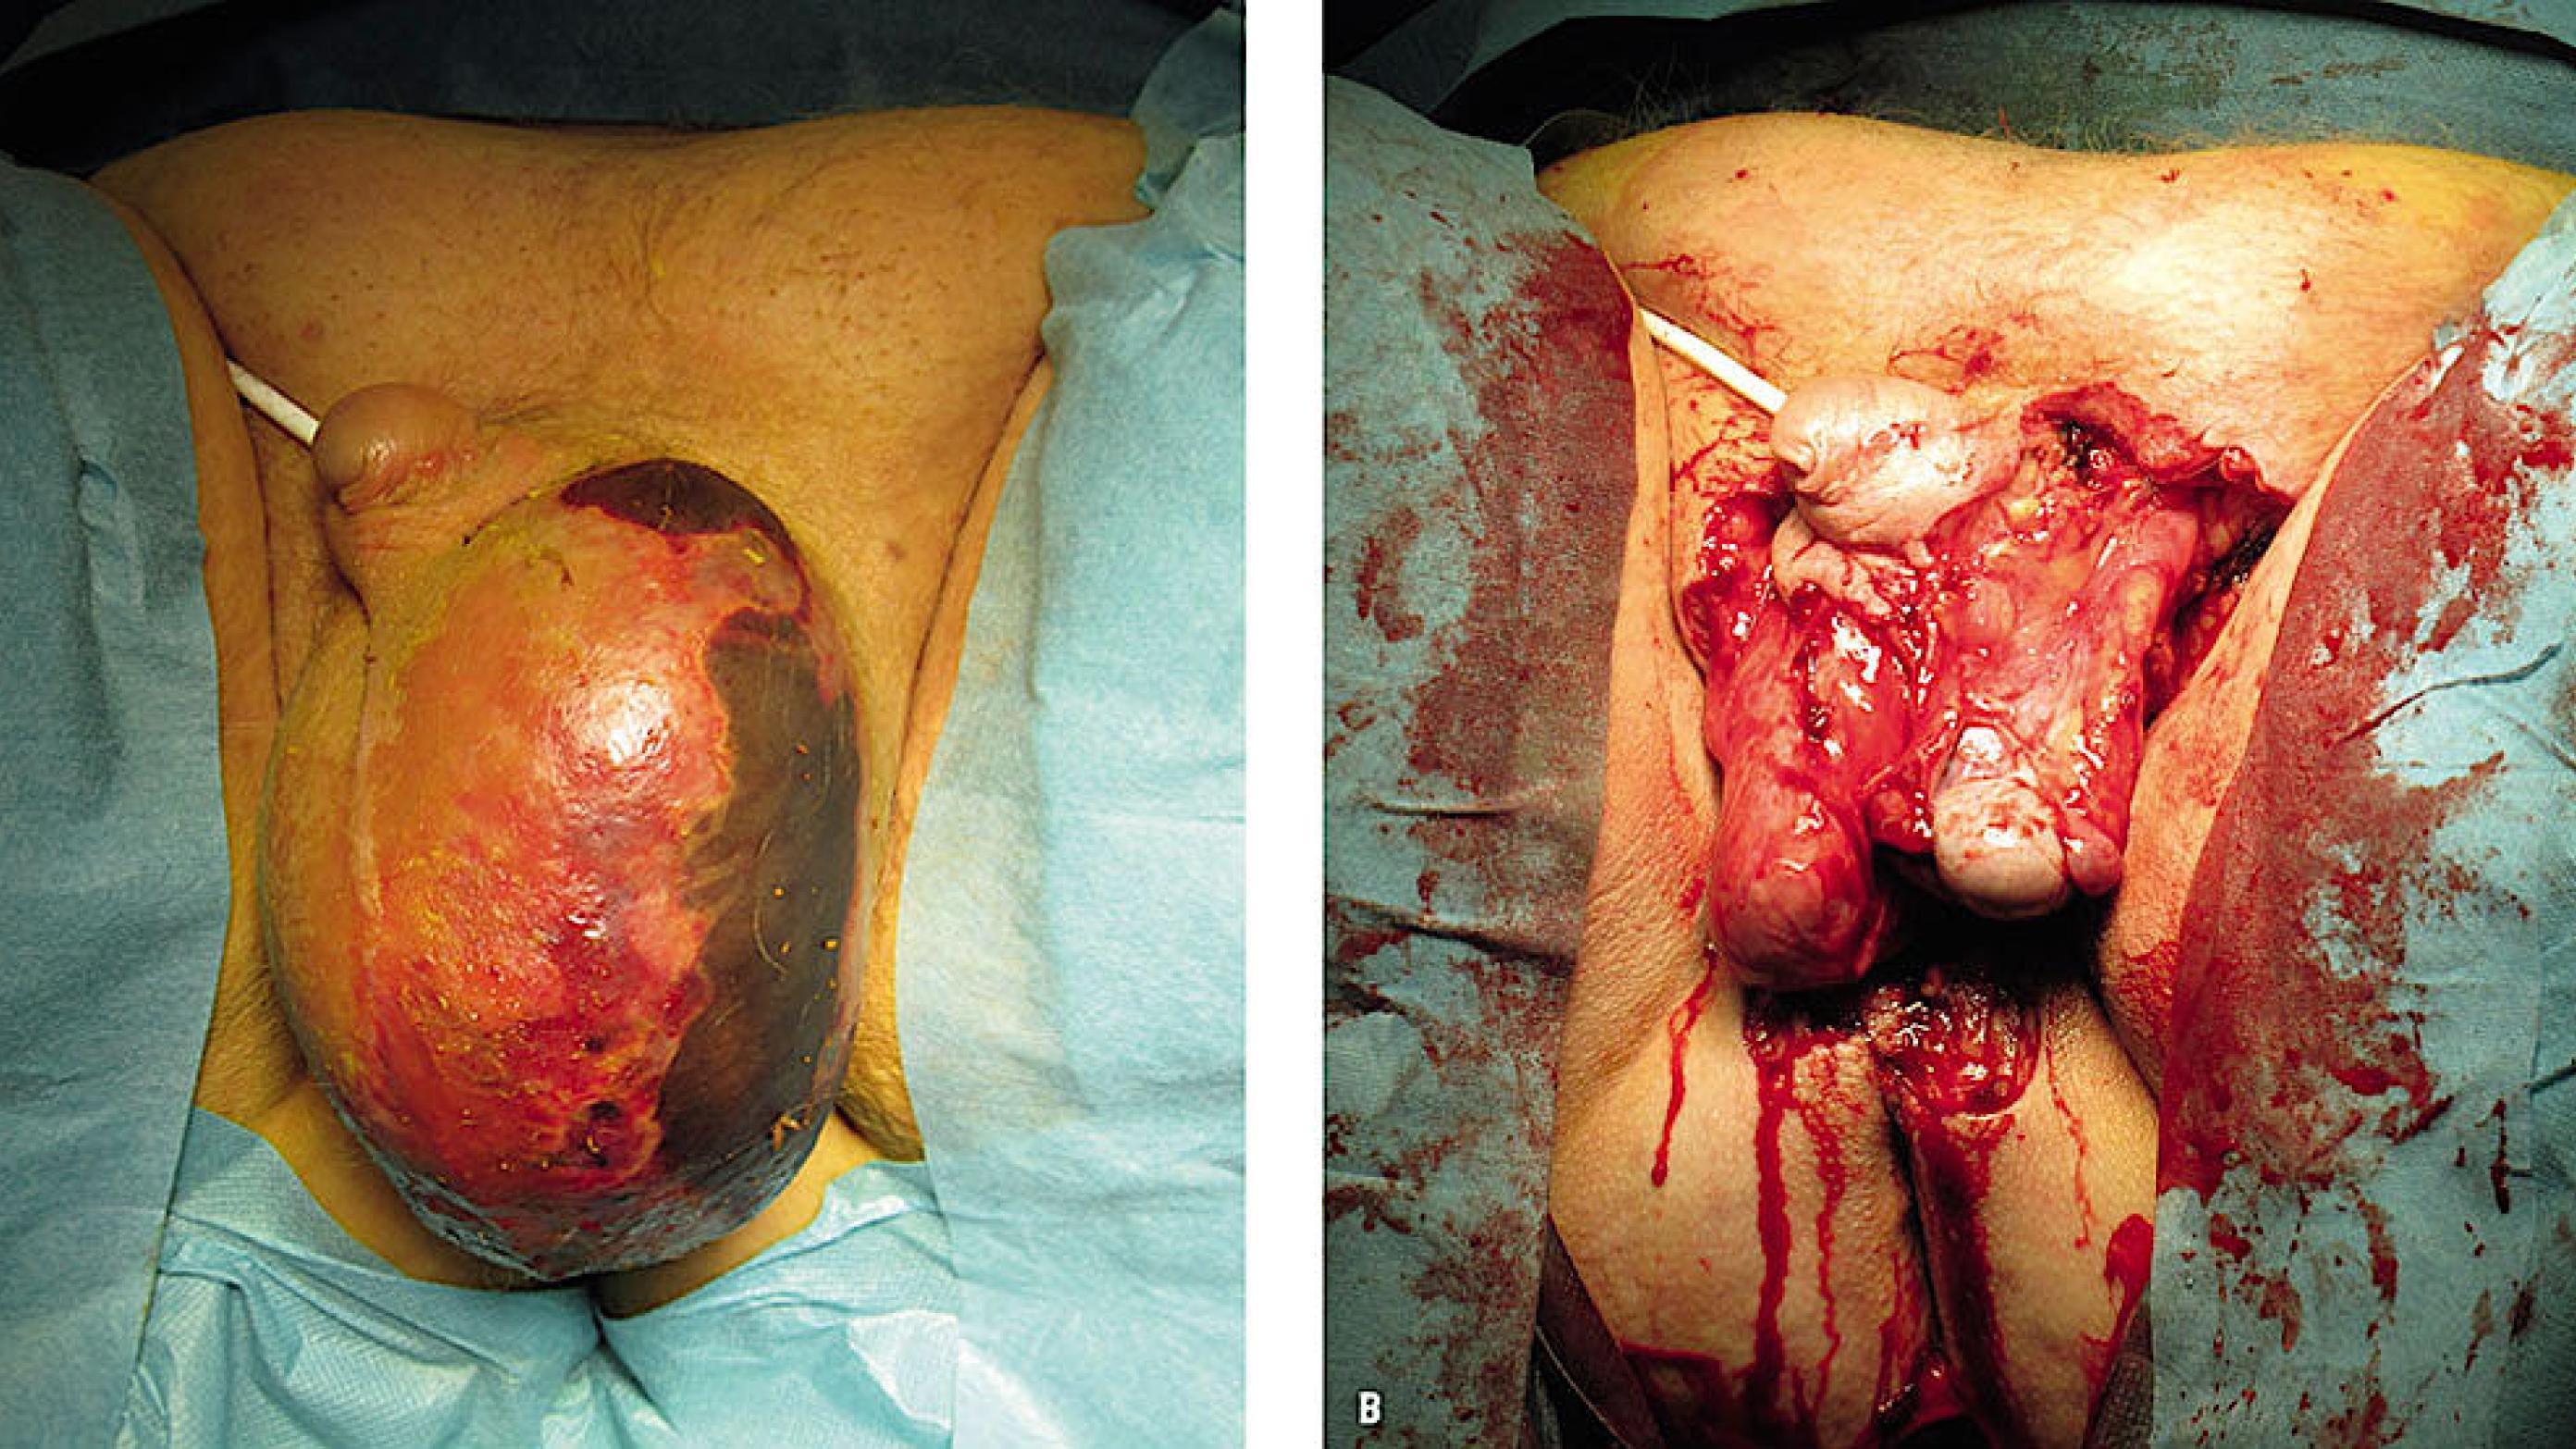 A. Hævelse og misfarvning af venstre skrotalhalvdel. B. Begge testiklerne ligger blottede efter resektion.